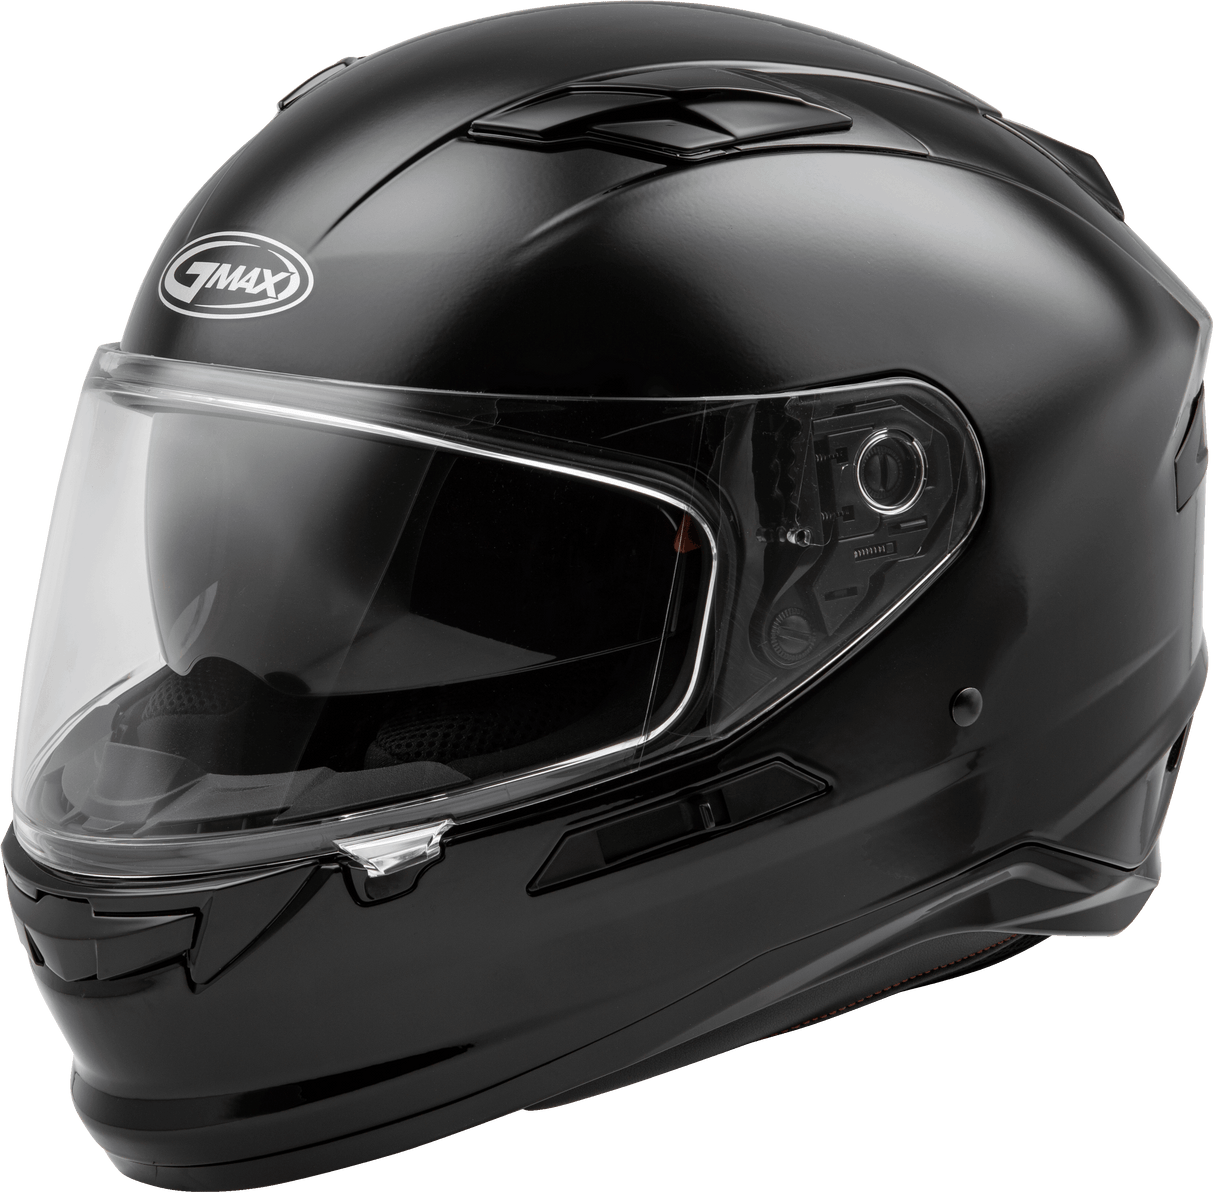 GMAX Ff 98 Full Face Helmet Black Sm for Powersports